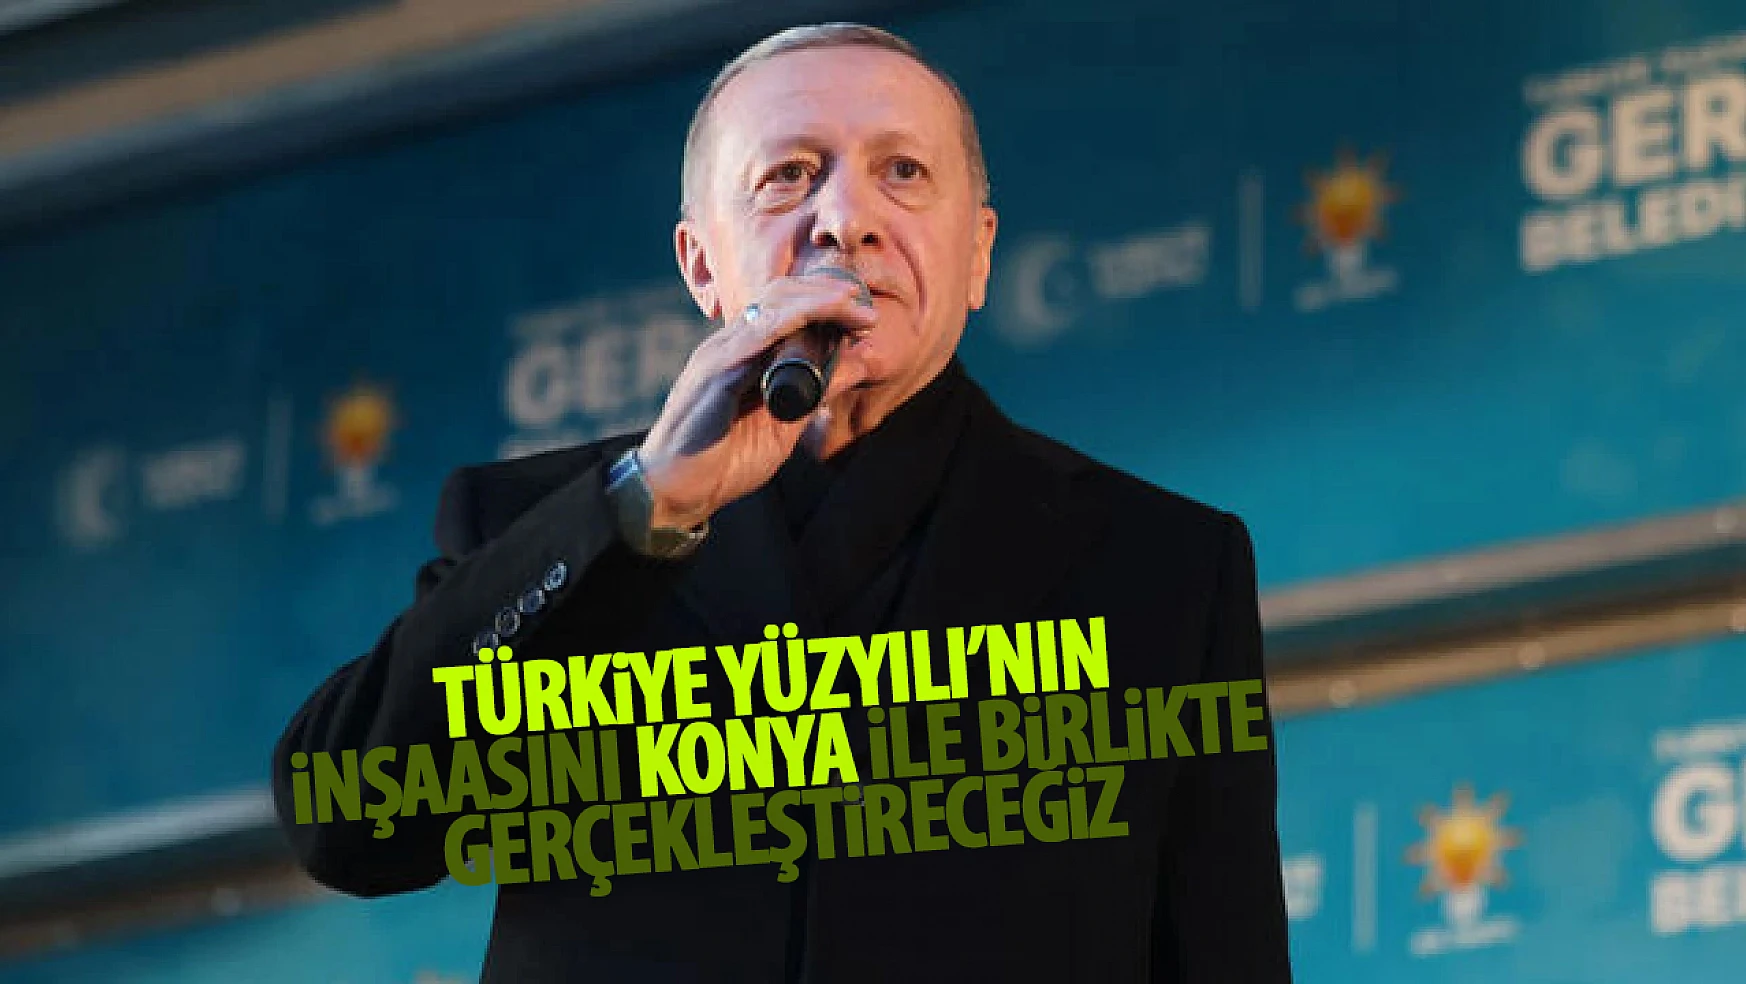 Cumhurbaşkanı Erdoğan Konya'da konuşuyor: 'Türkiye Yüzyılı'nın inşasını Konya ile gerçekleştireceğiz'